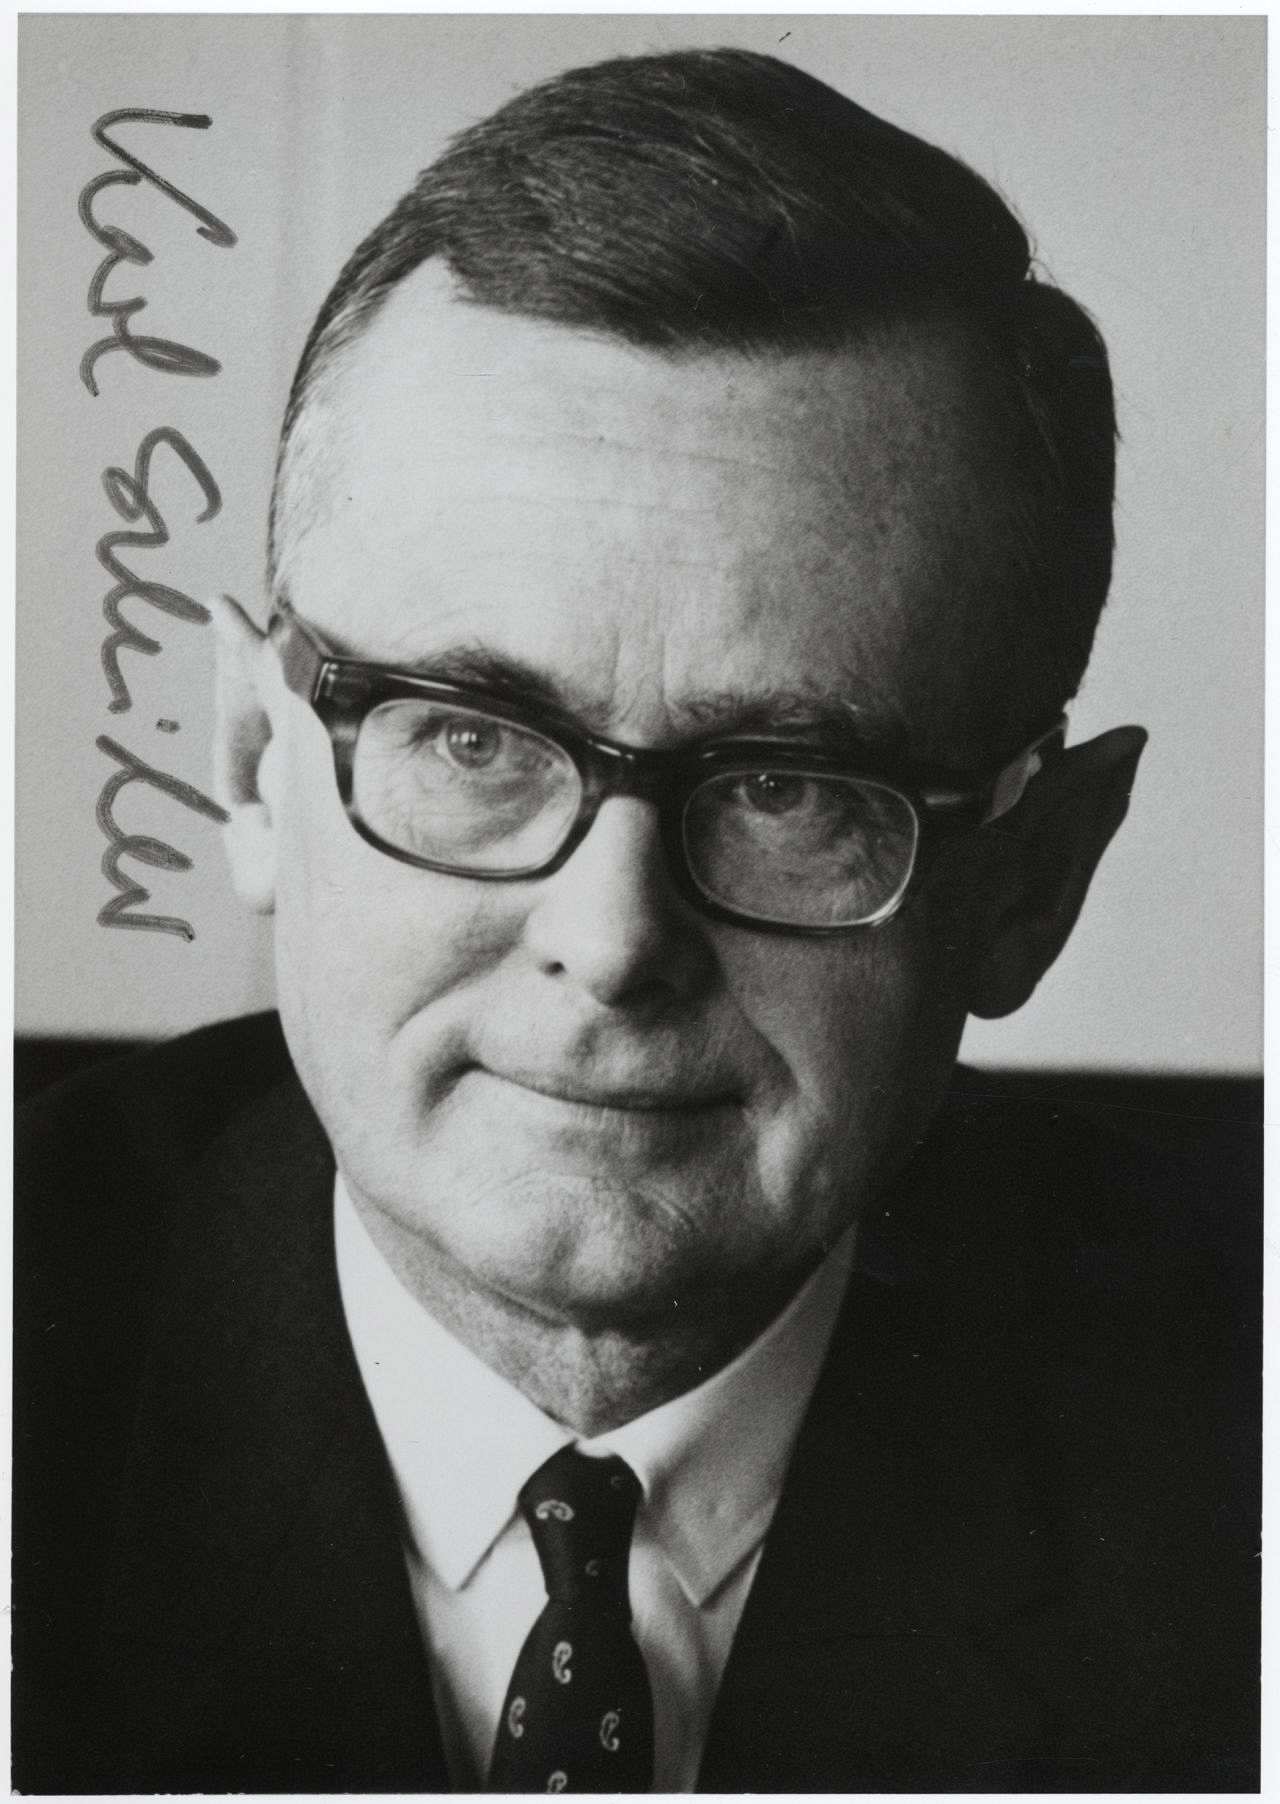 Signiertes Porträtfoto von Karl Schiller, Minister für Wirtschaft in der Großen Koalition unter Bundeskanzler Kiesinger (1966-1969).